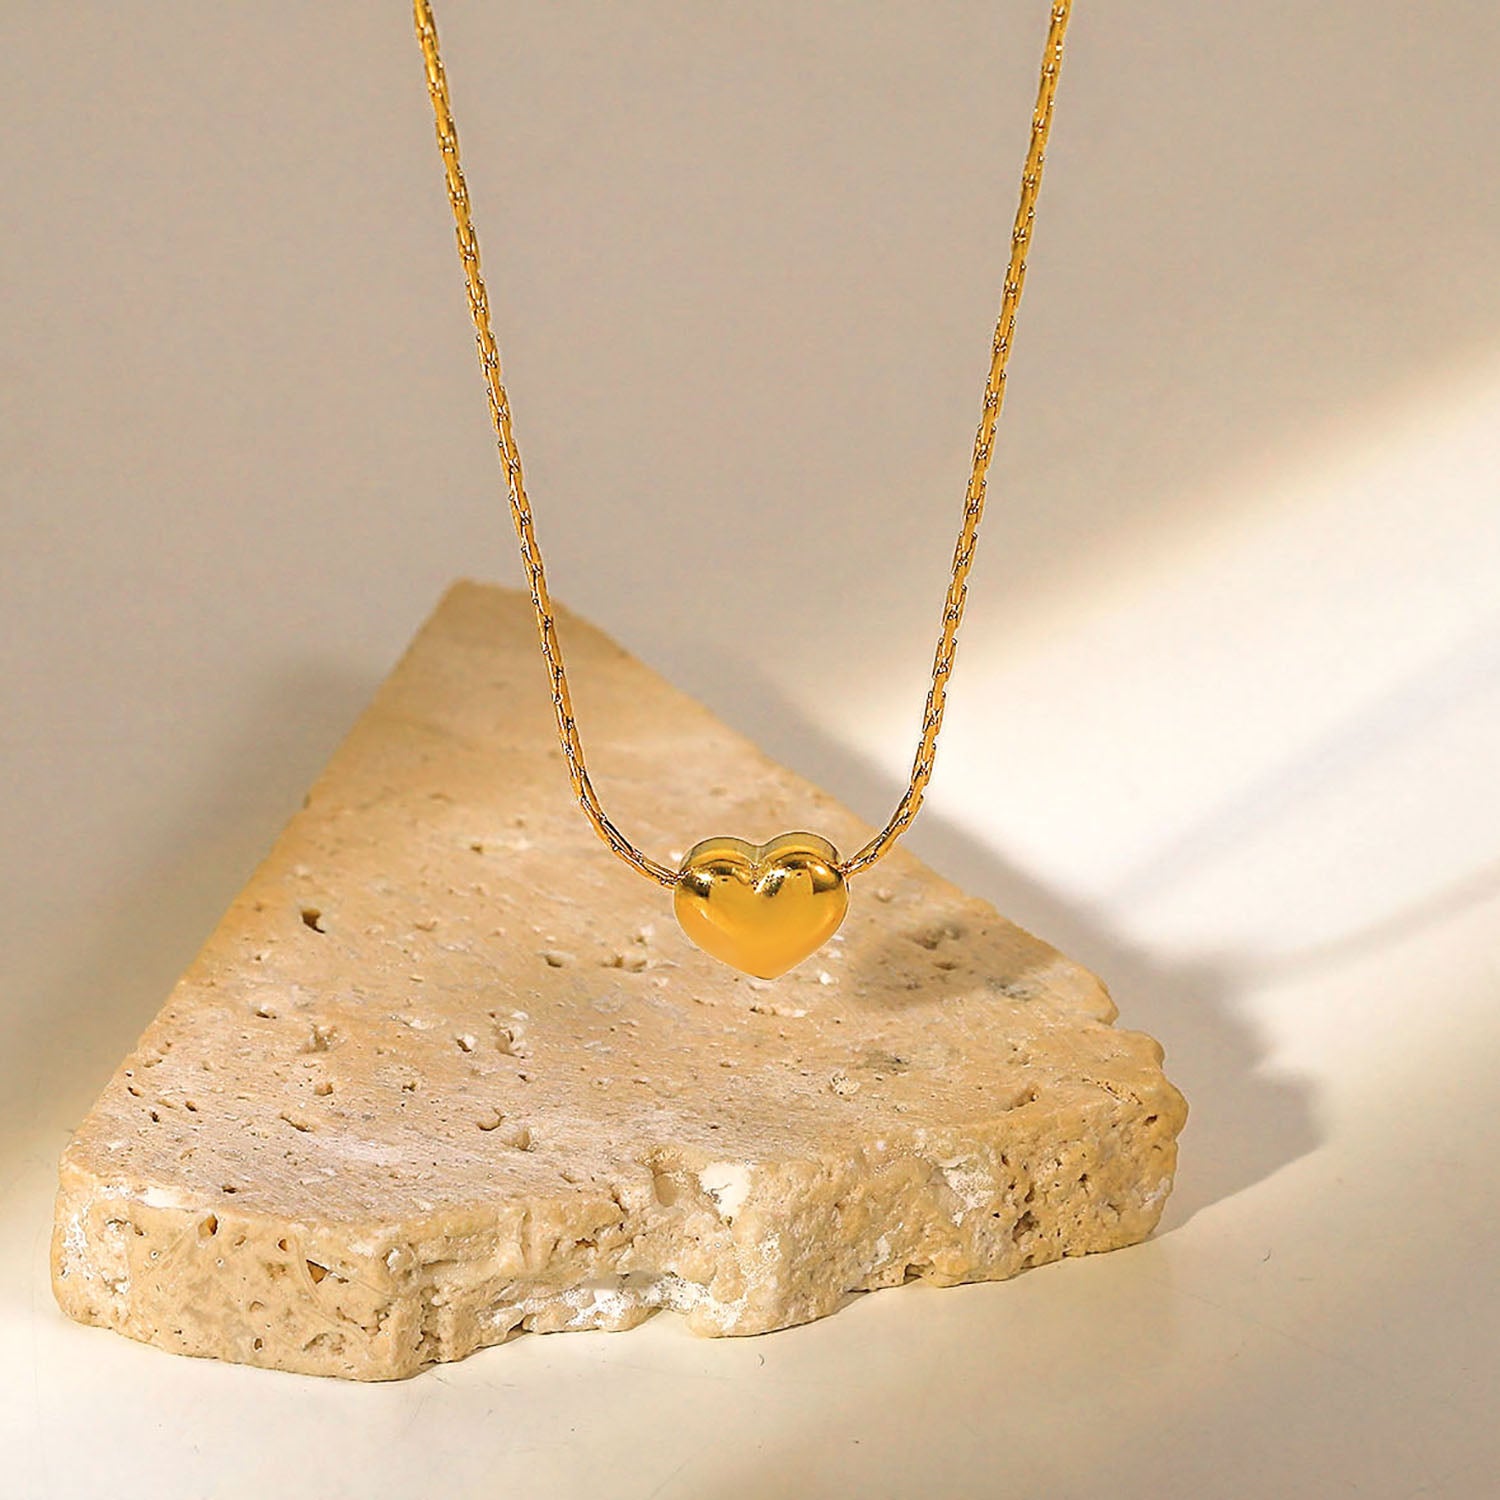 Ankunft 18K PVD vergoldeter Herz-Anhänger-Halsband-Schmucksache-Party-Edelstahl-einfache glatte Herz-Halskette für Mädchen